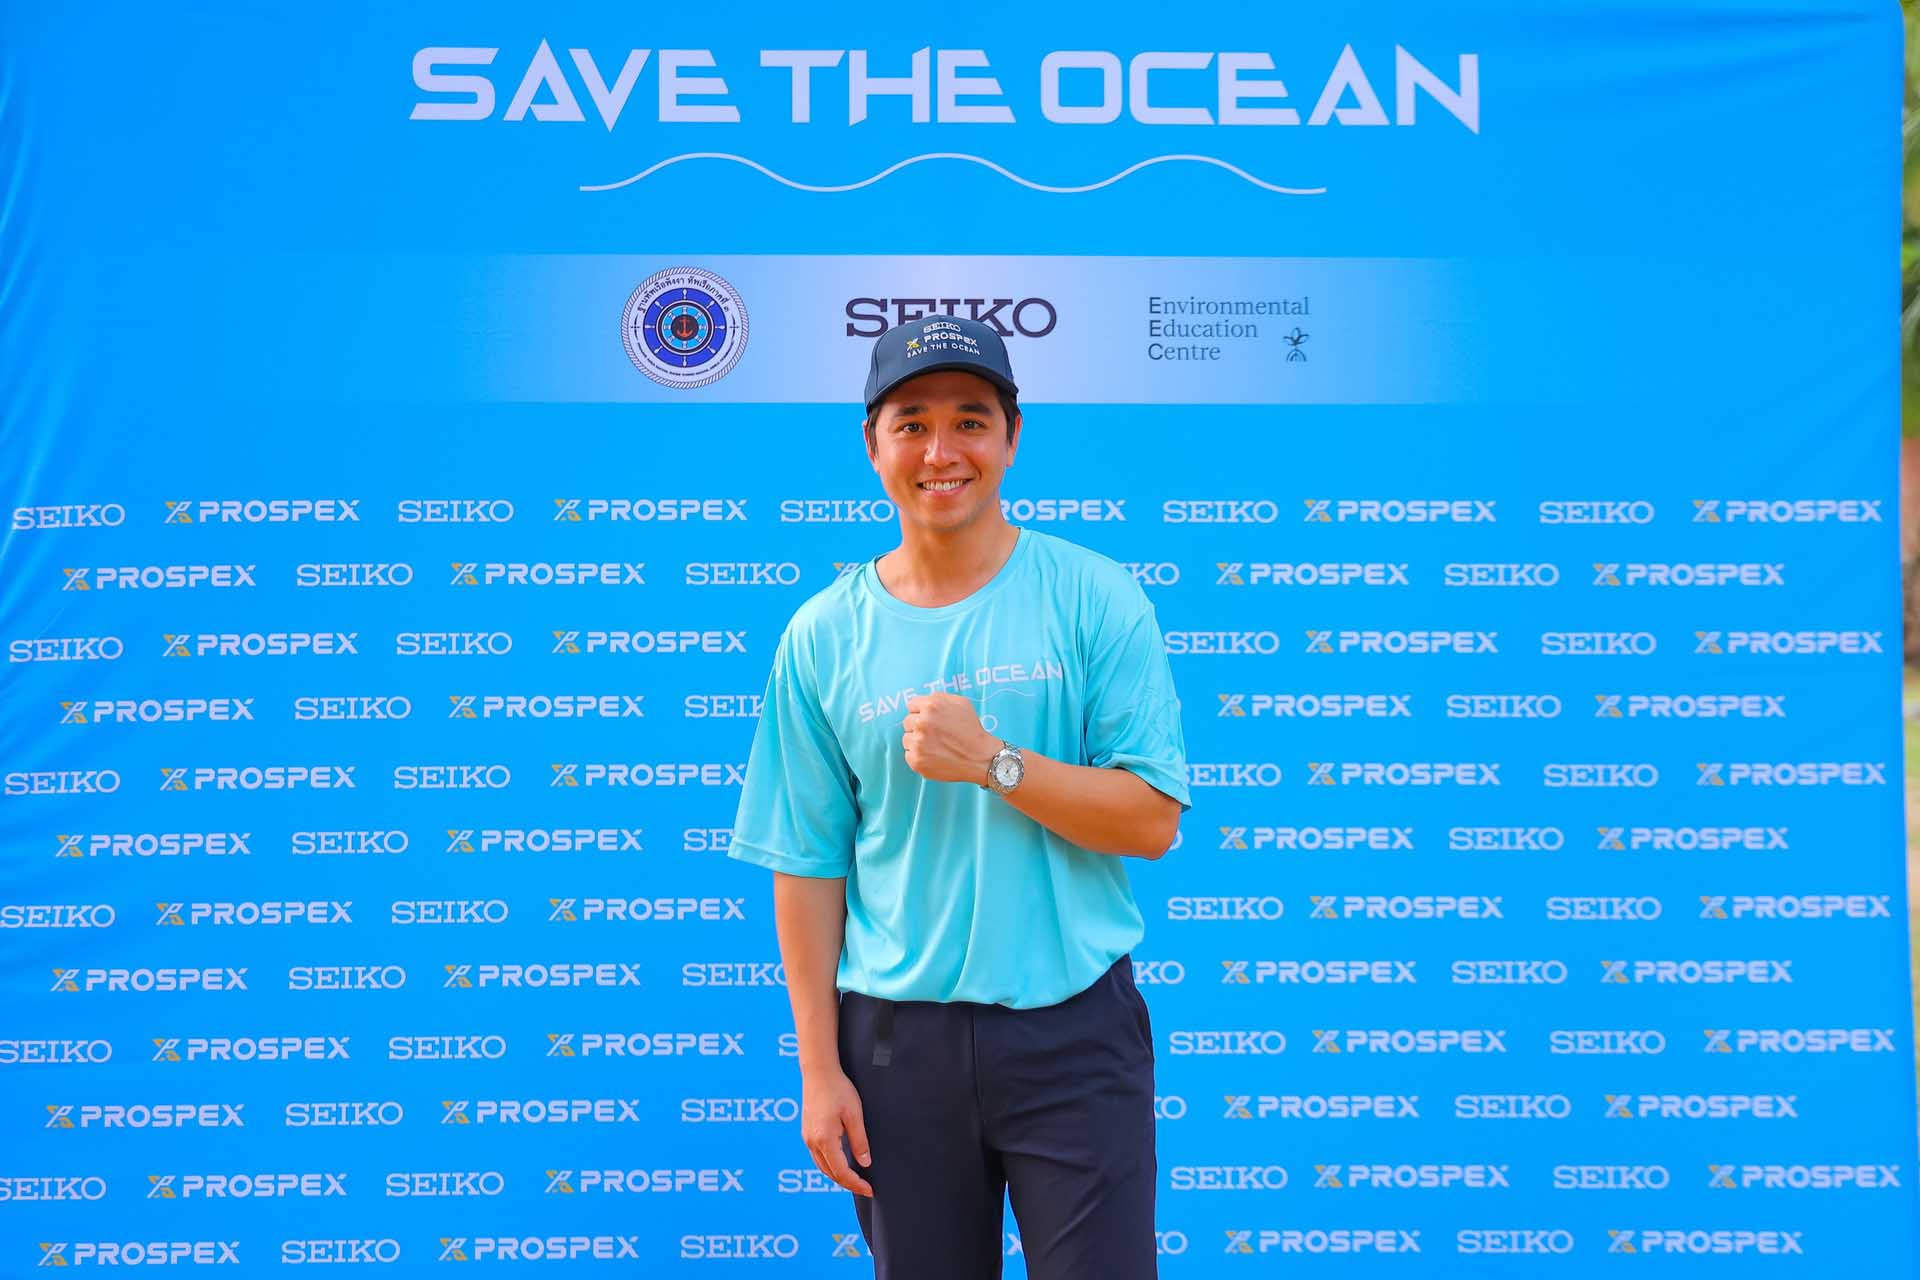 Seiko Save the ocean ครั้งที่ 6